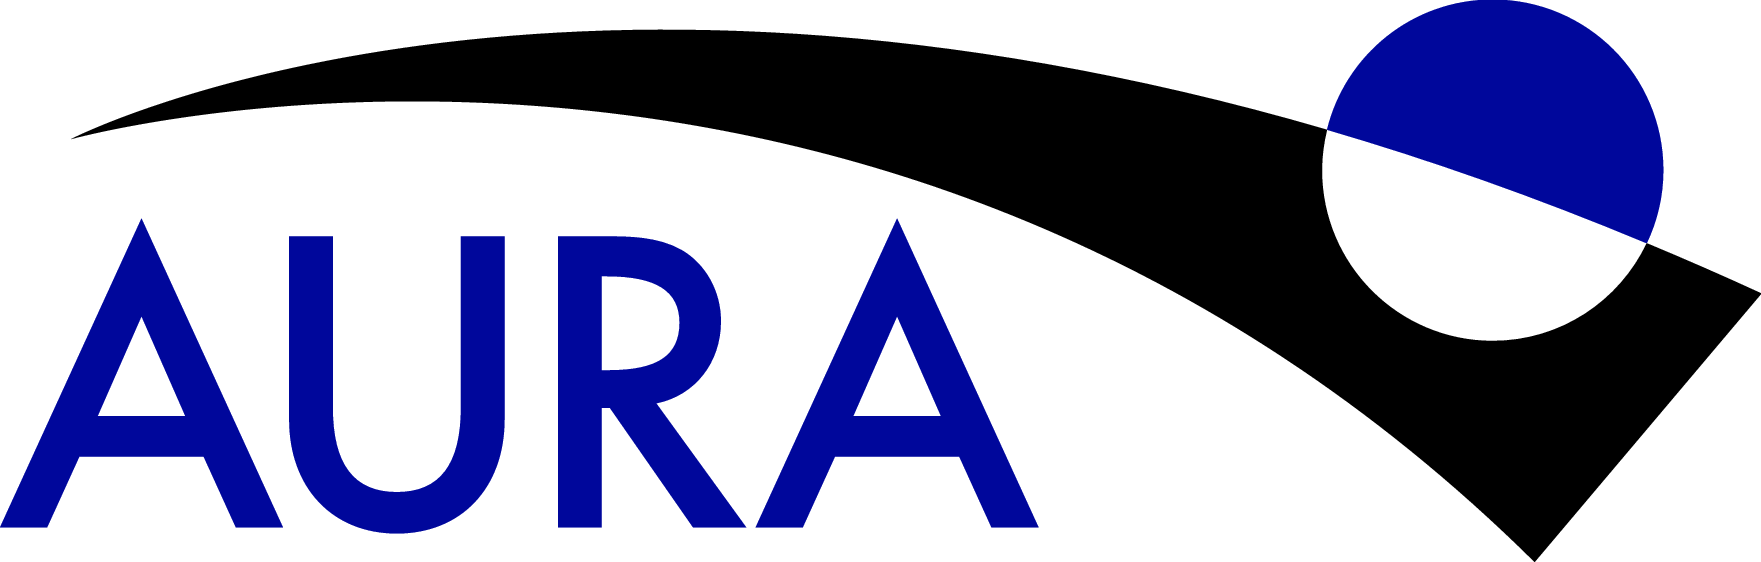 AURI logo